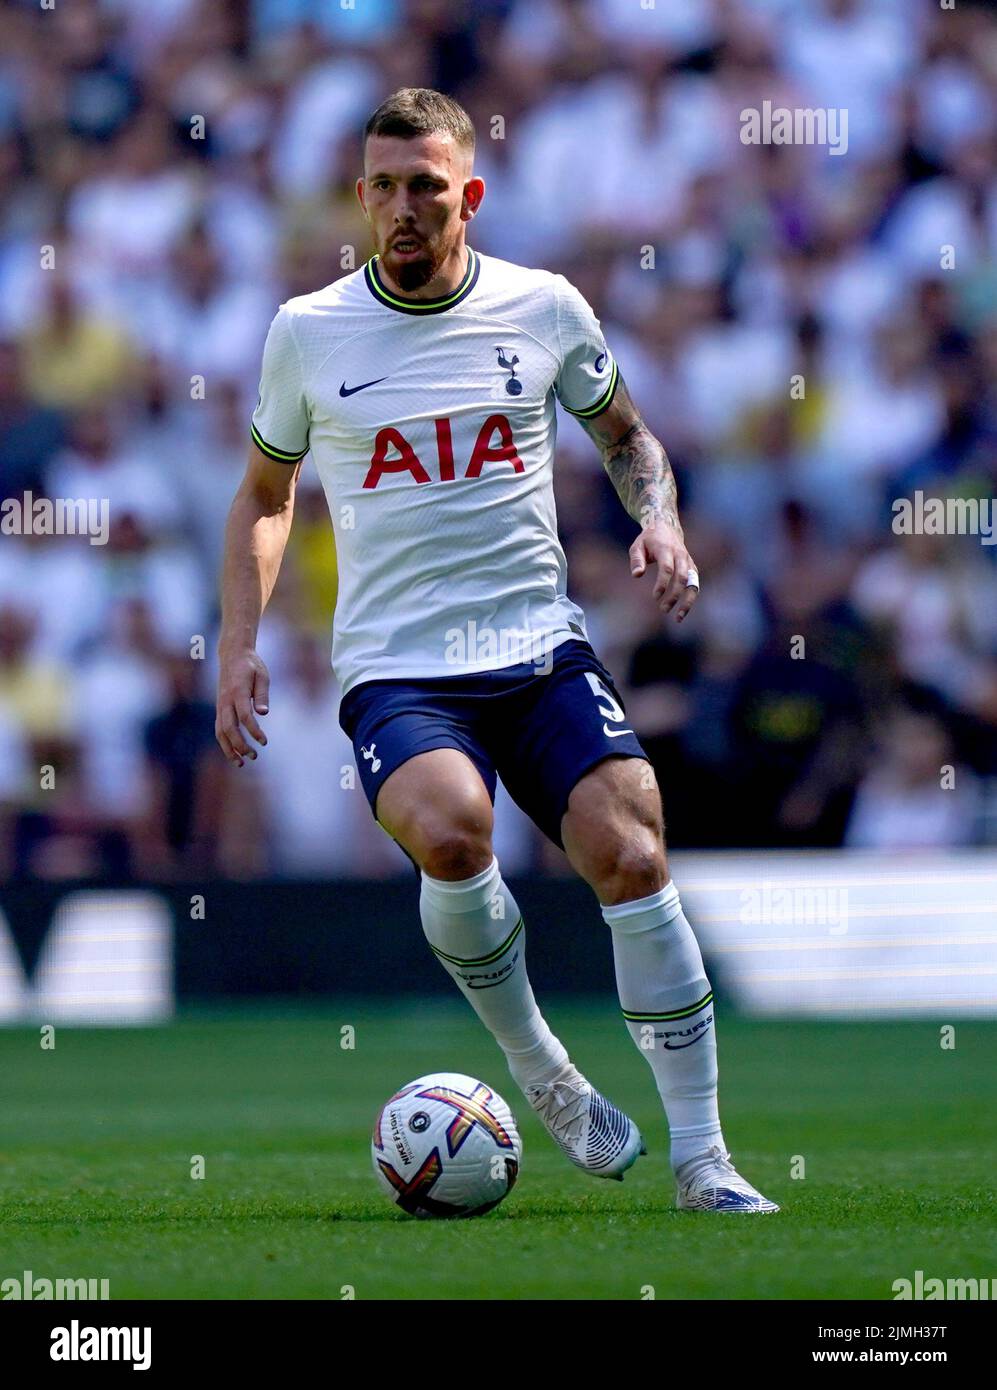 Pierre-Emile Hojbjerg del Tottenham Hotspur durante el partido de la Premier League en el Tottenham Hotspur Stadium, Londres. Fecha de la foto: Sábado 6 de agosto de 2022. Foto de stock